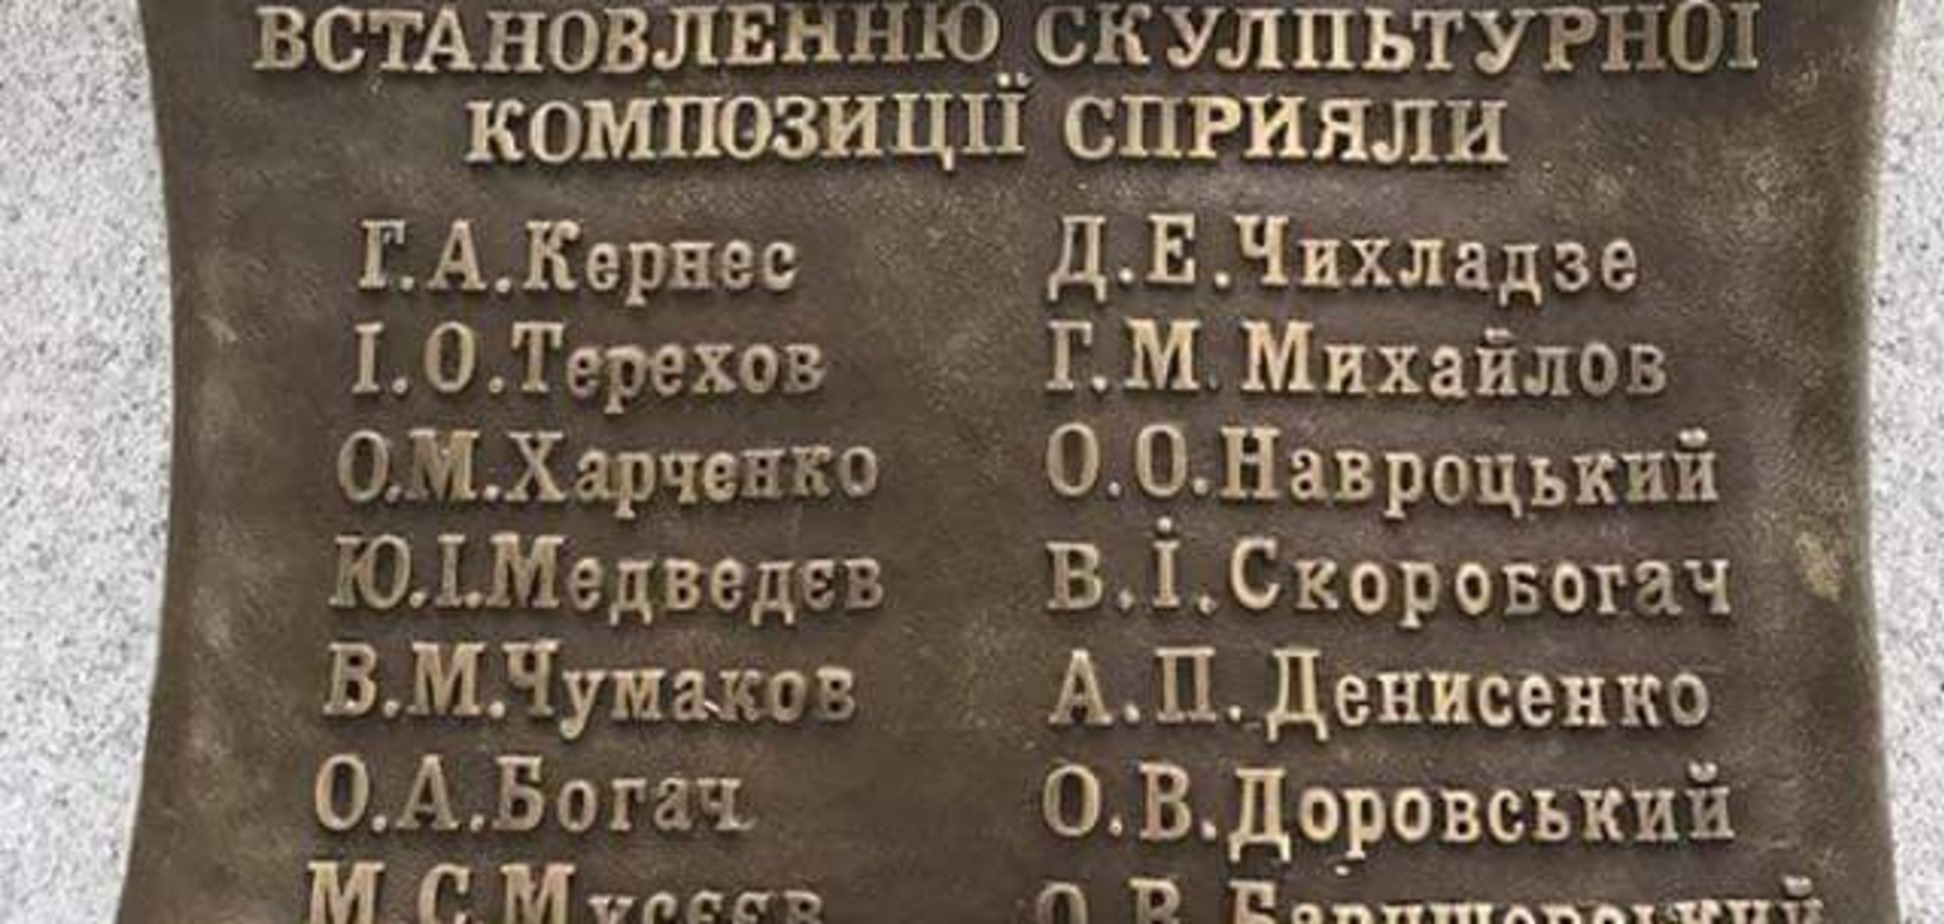 Кернес открыл памятник Гурченко с ошибками